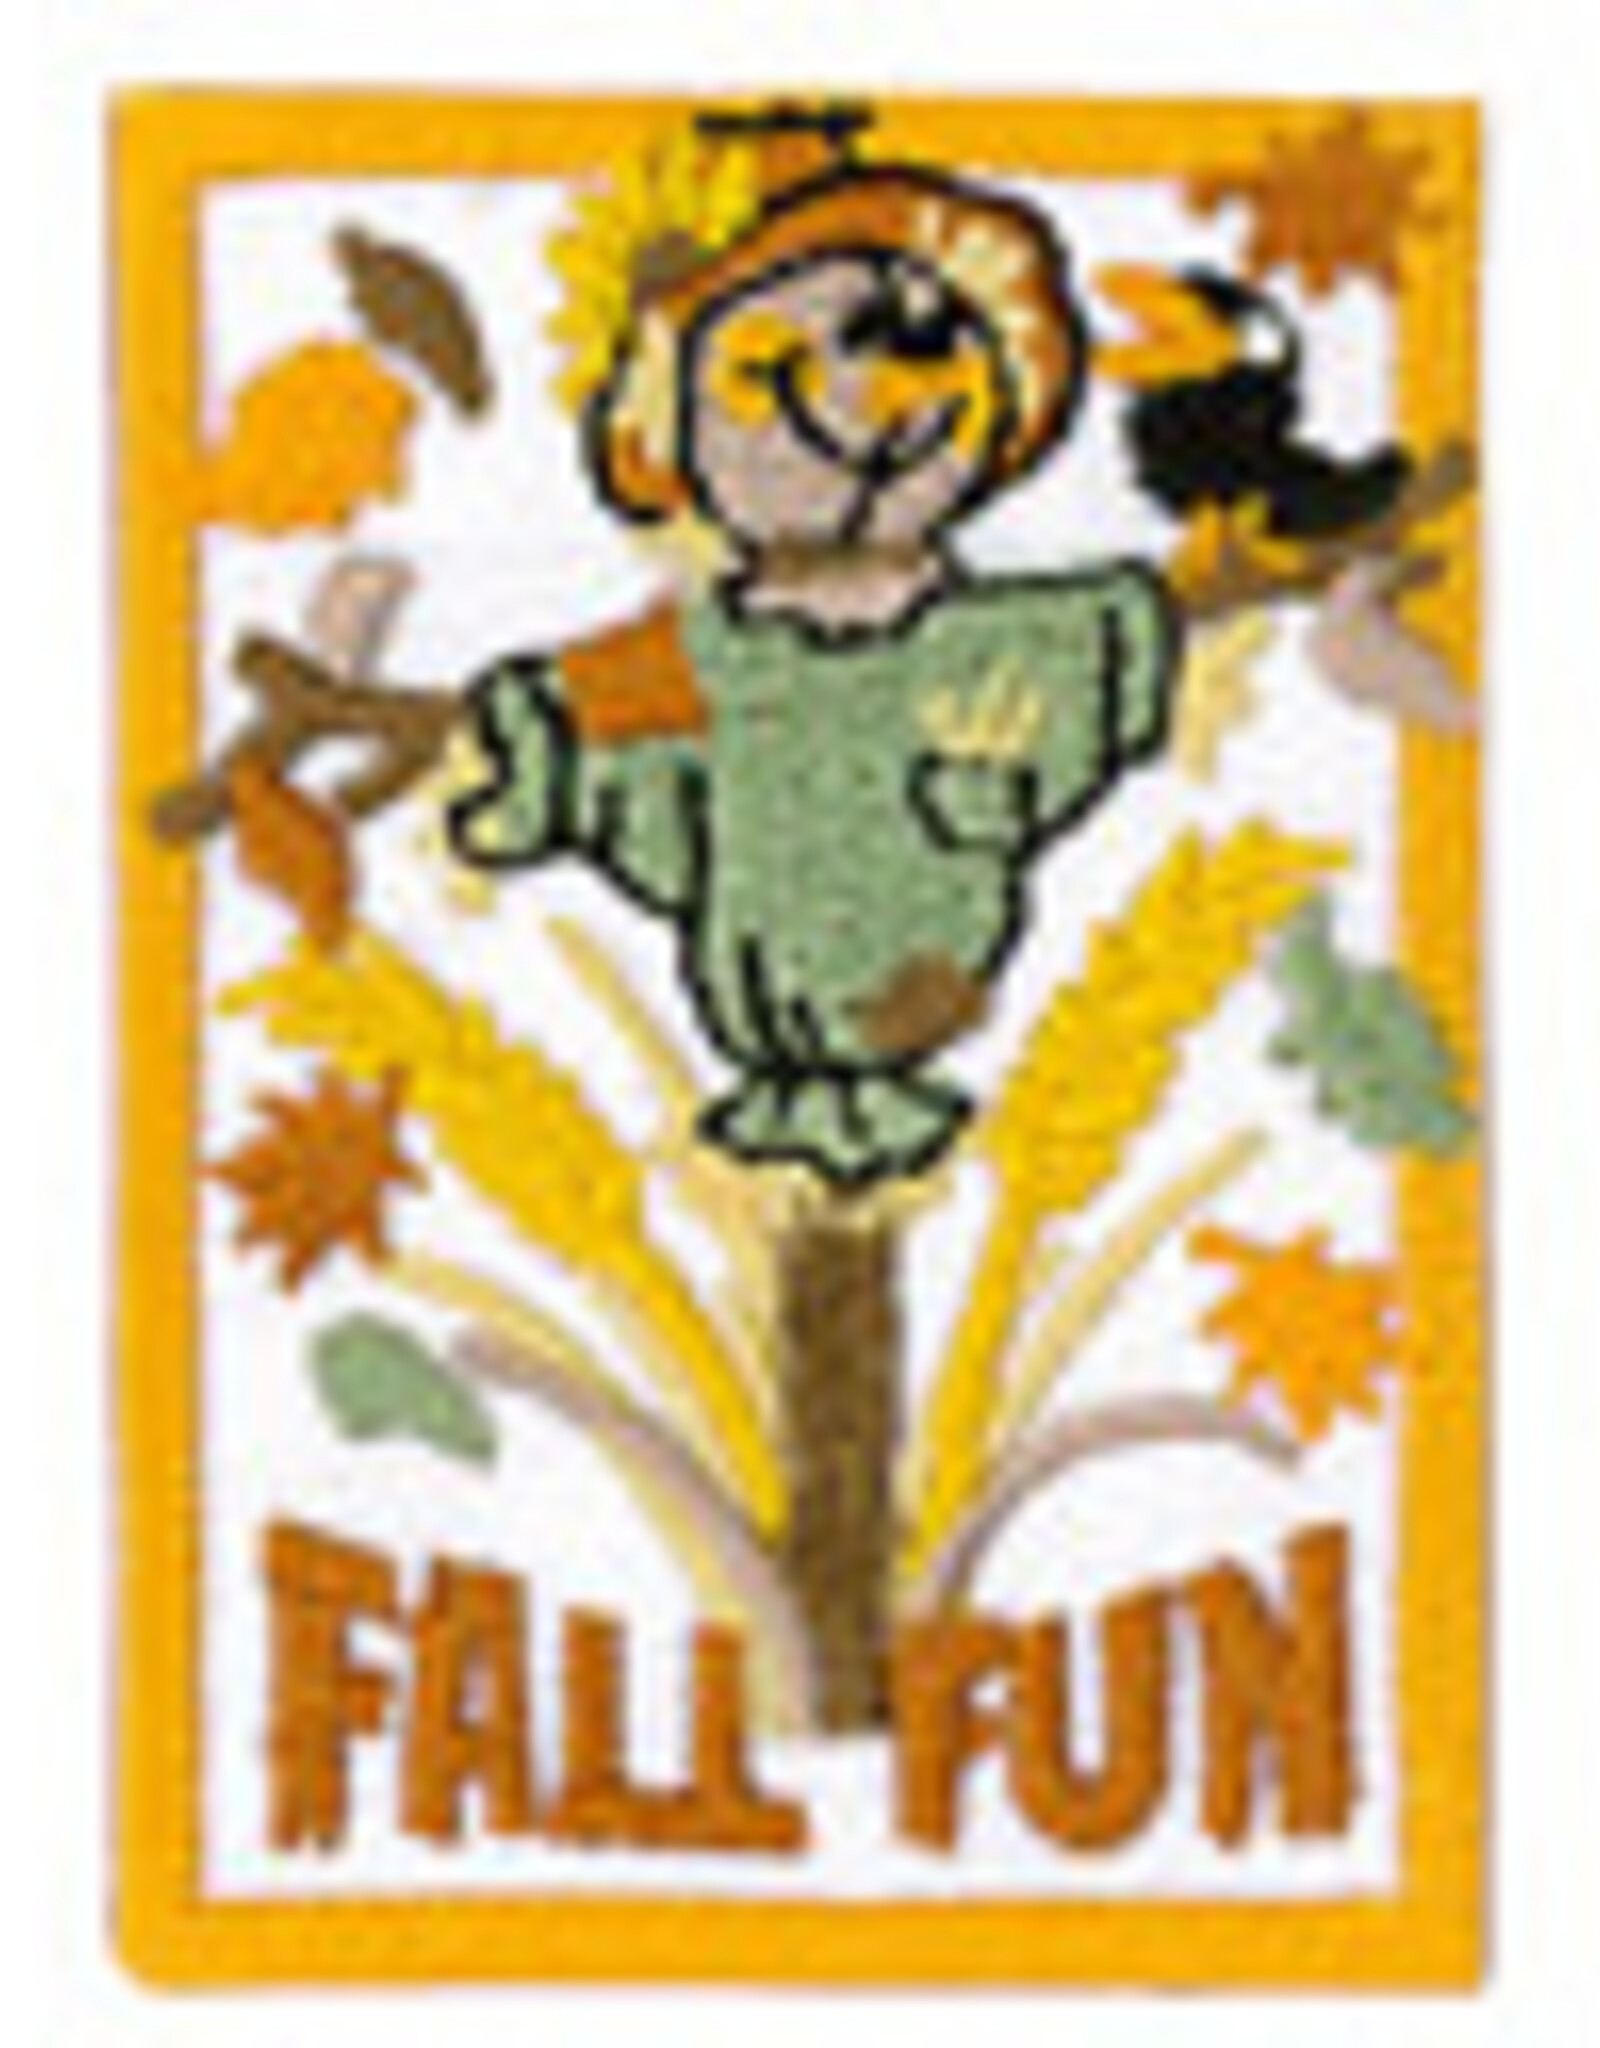 Fall Fun (Scarecrow) Fun Patch (9225)